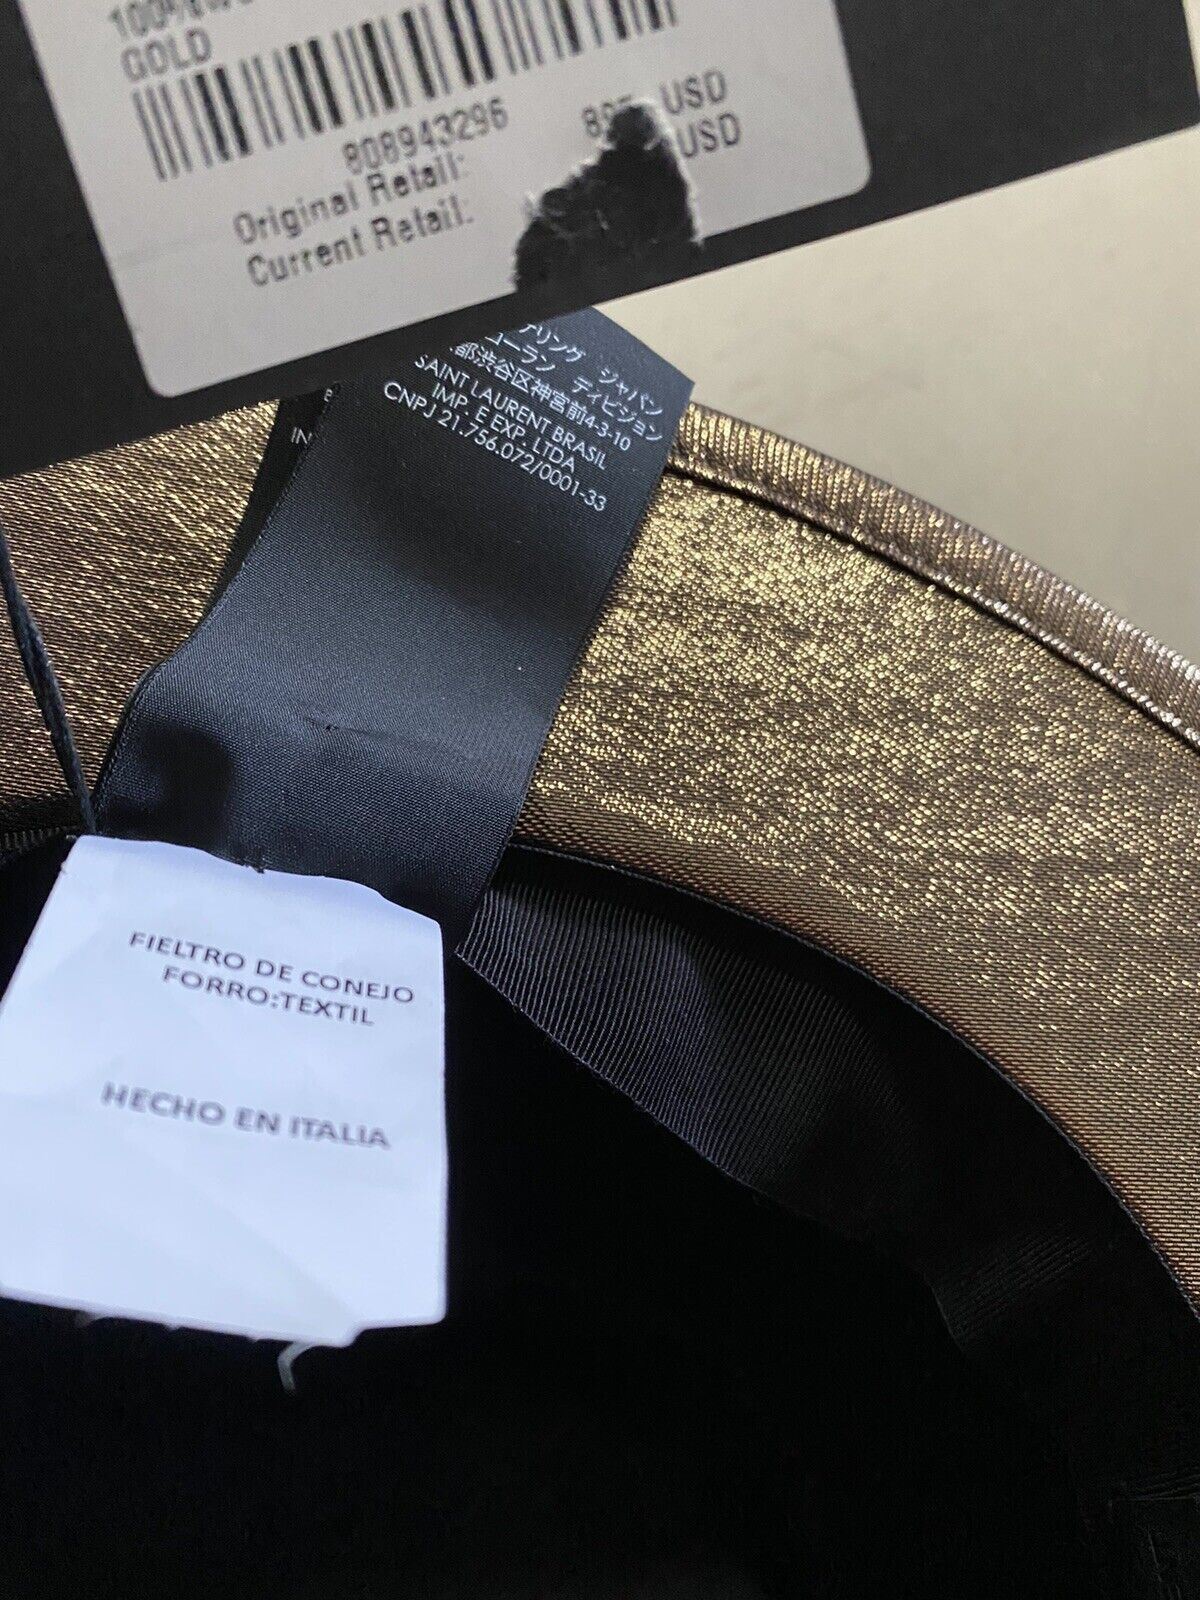 NWT $895 Saint Laurent Мужская фетровая шляпа Lane Fedora золотистого размера M Италия